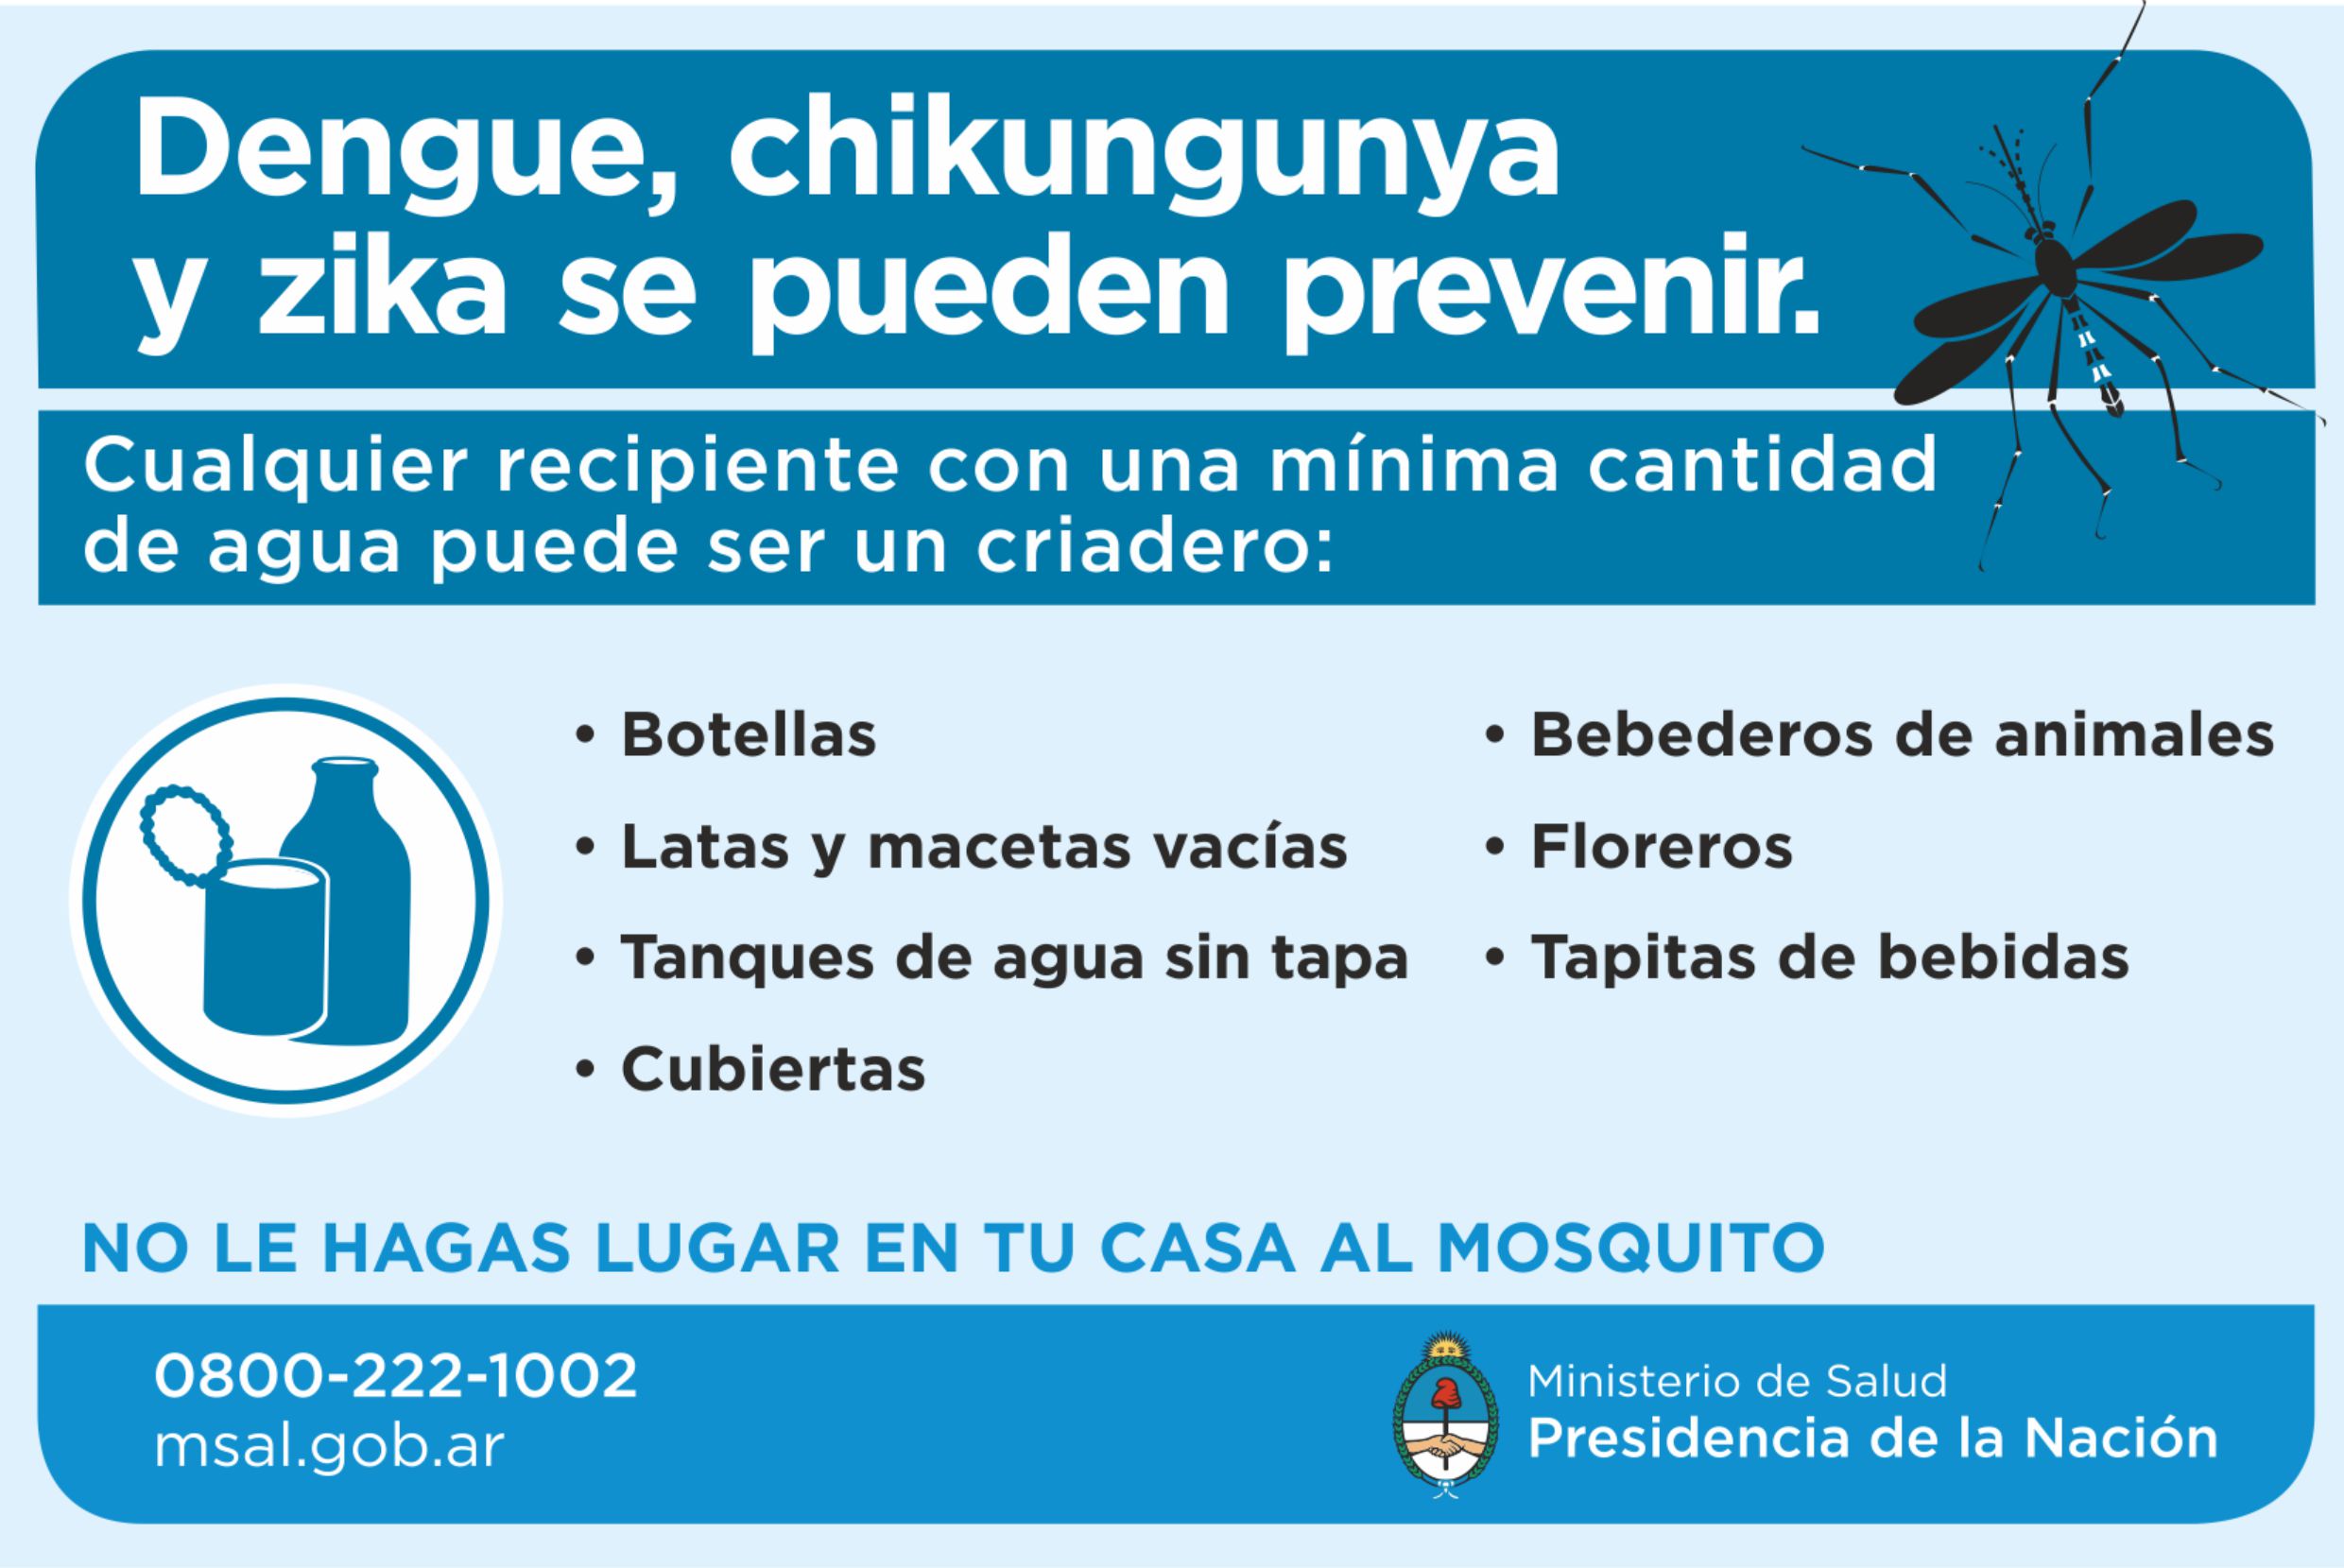 Continúan las acciones para prevenir dengue • Canal C